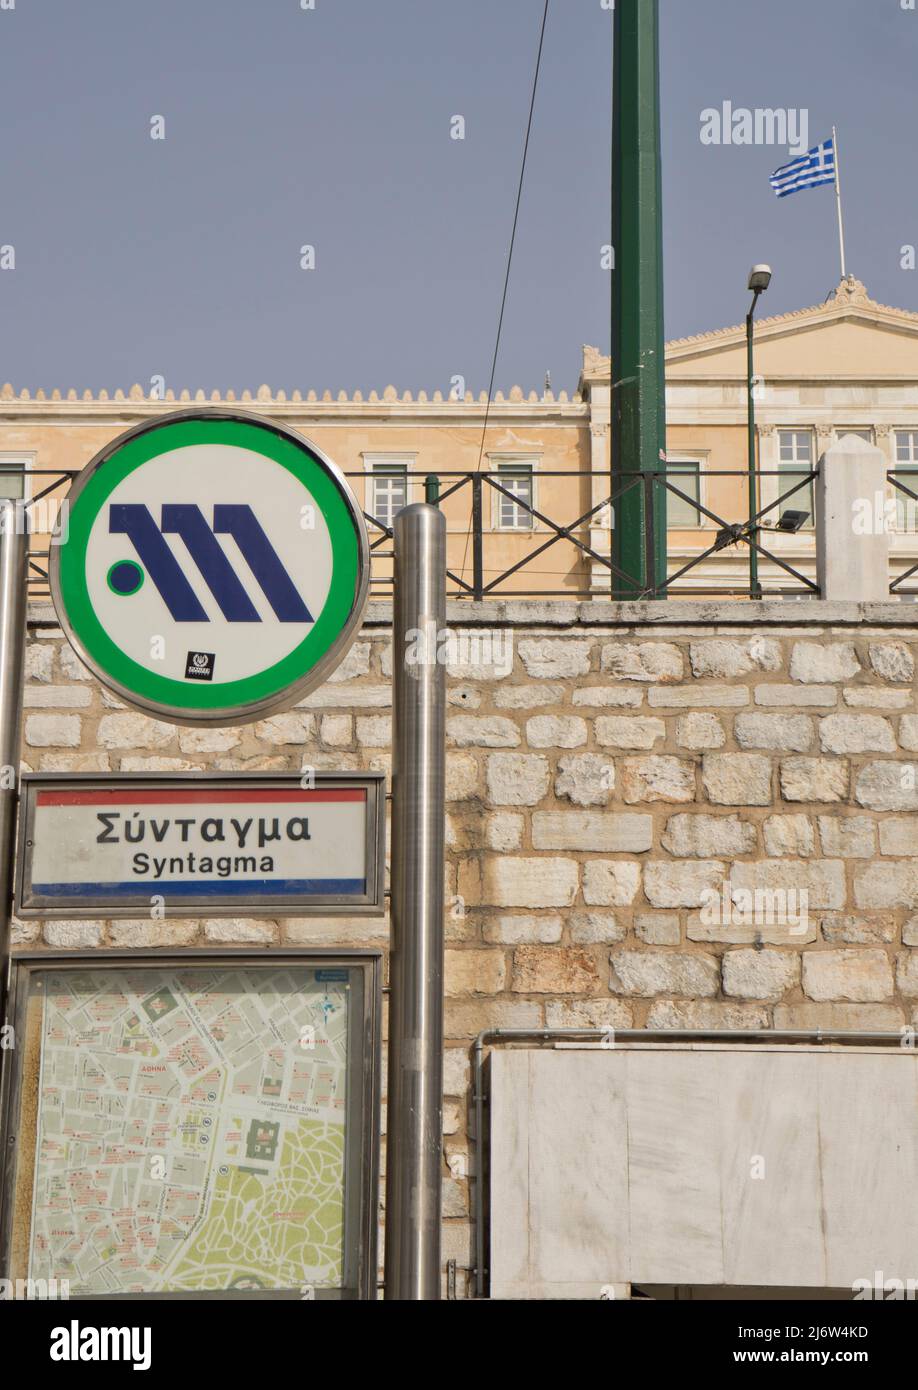 Station de métro à la place Syntagma près de l'ancien Palais Royal, abritant le Parlement grec depuis 1934, Athènes, Grèce, Europe Banque D'Images